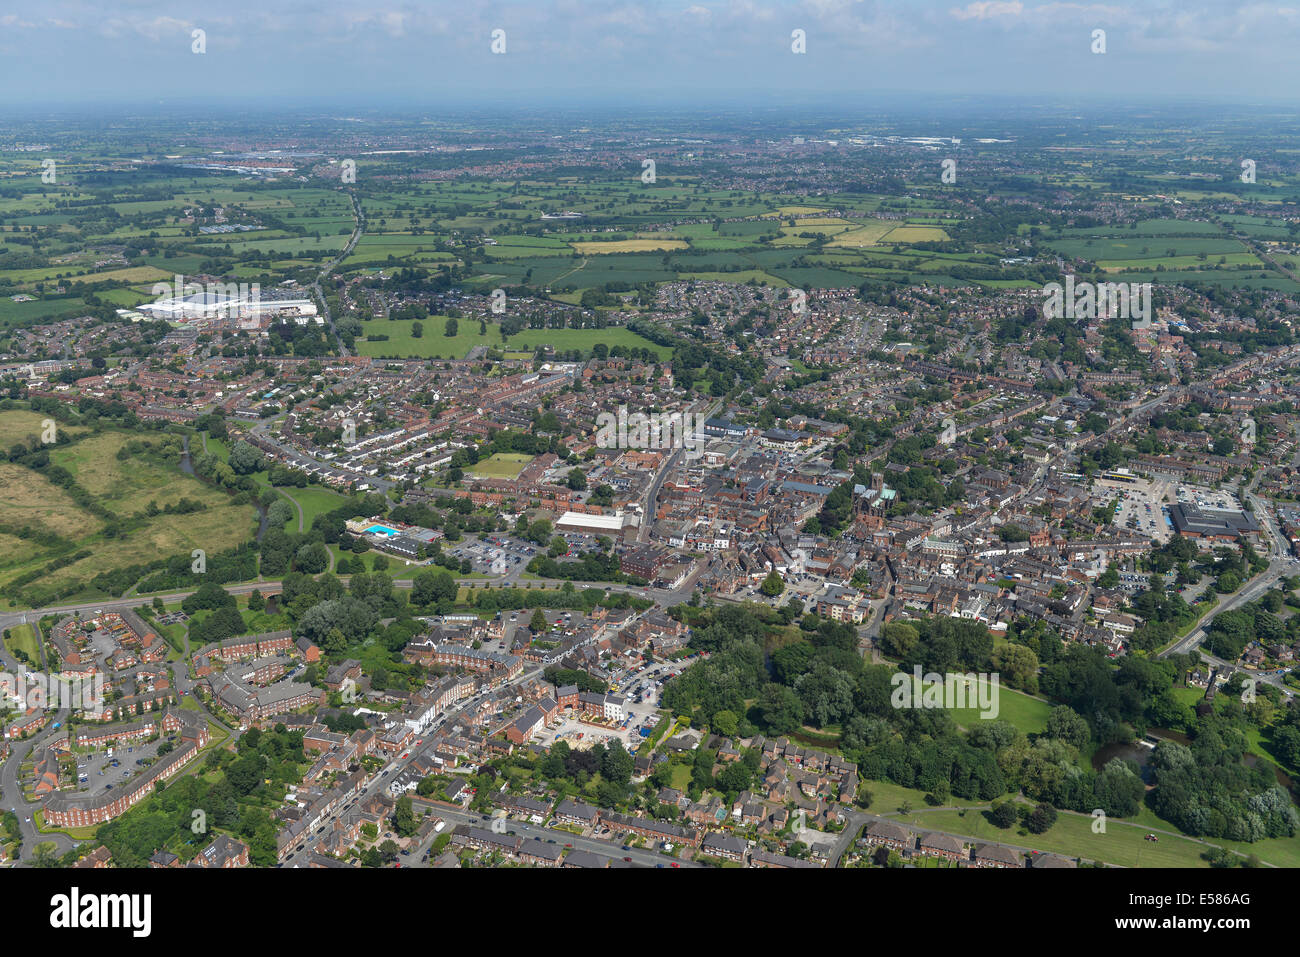 Une image montrant la ville de Nantwich et la campagne du Cheshire. Banque D'Images